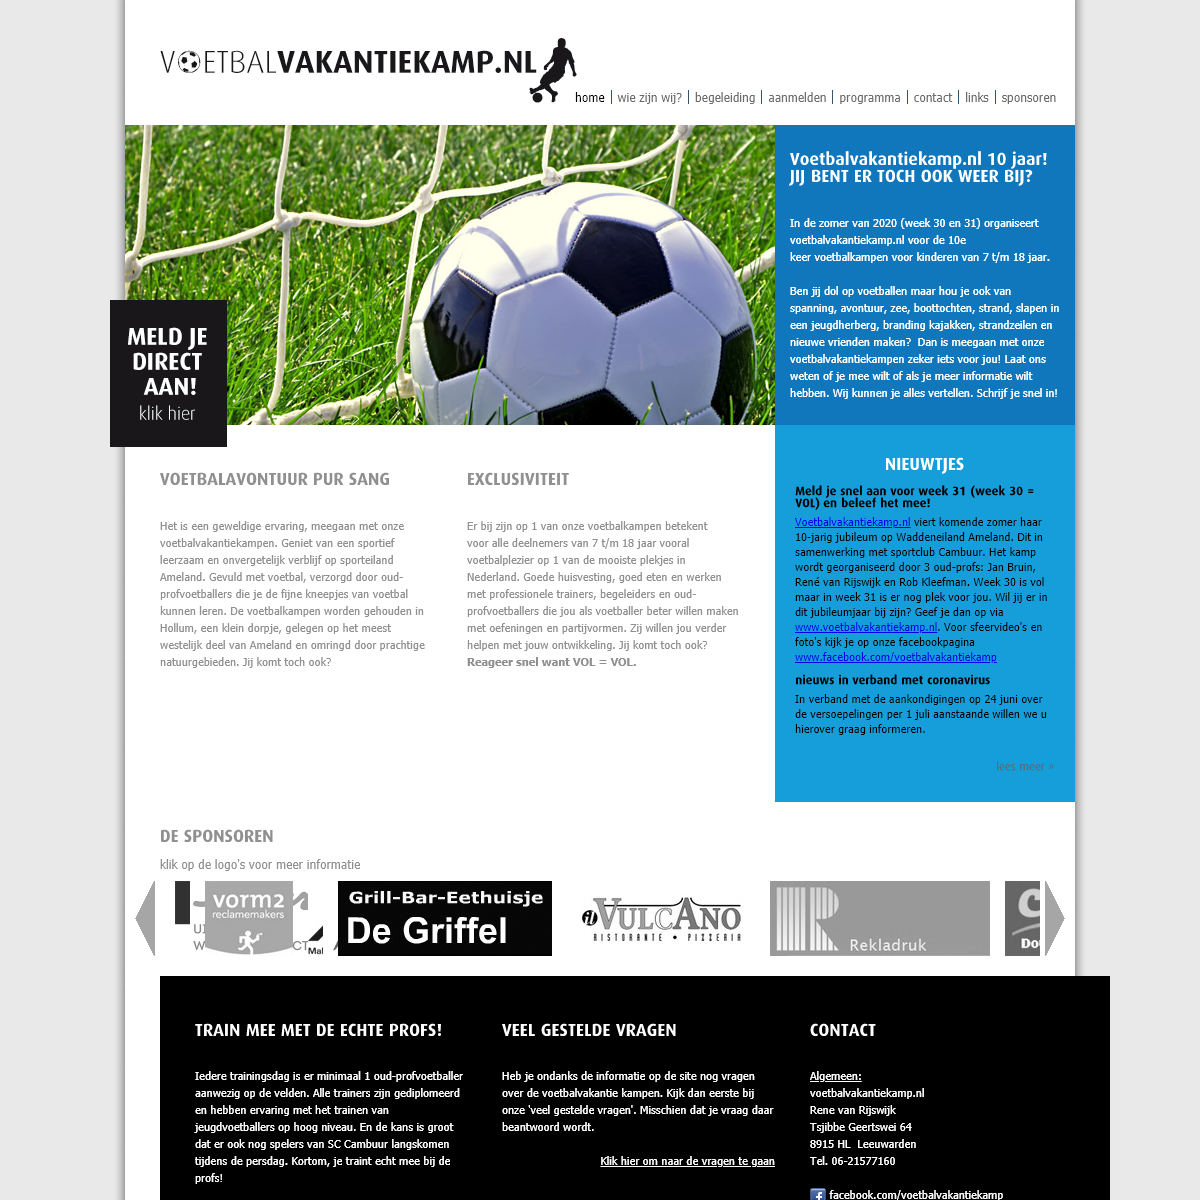 A complete backup of voetbalvakantiekamp.nl